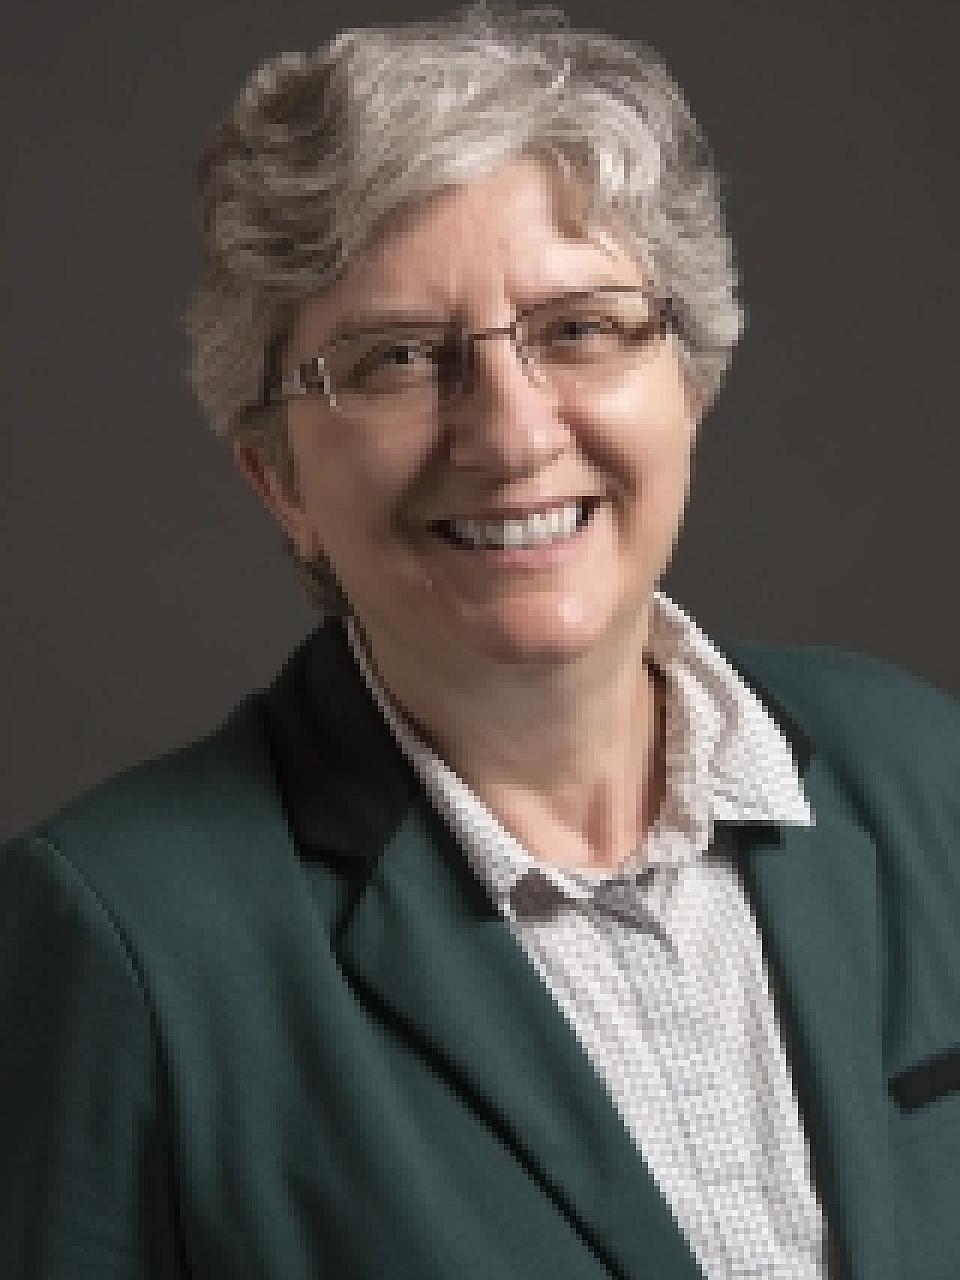 Dr. Kathy Sward